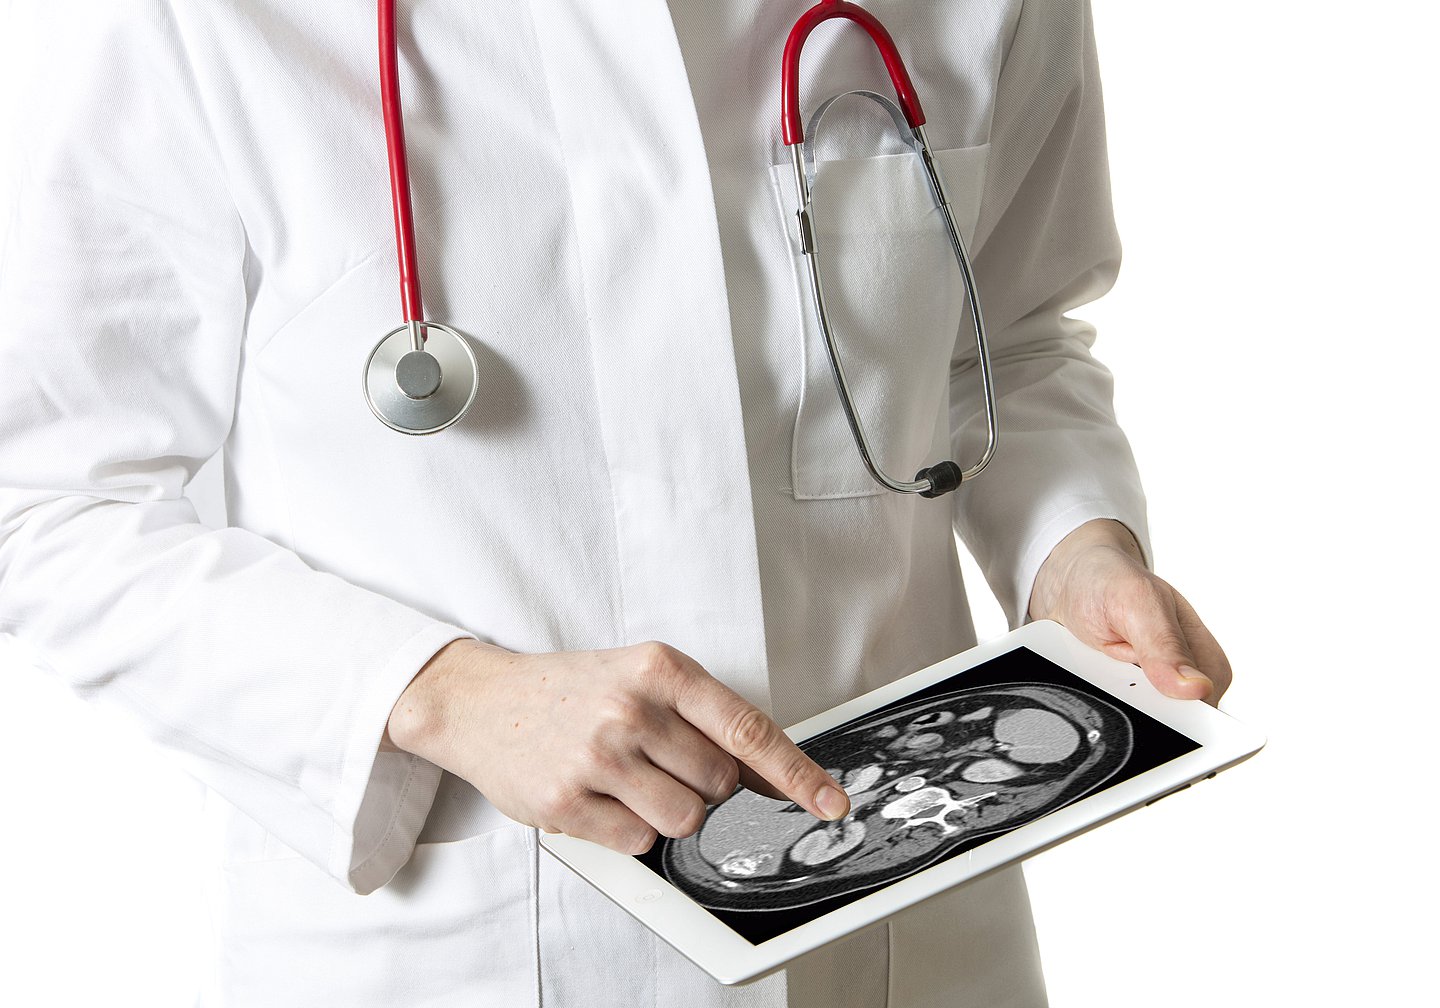 Foto: Ein Arzt hält ein Tablet mit einem Röntgenbild.